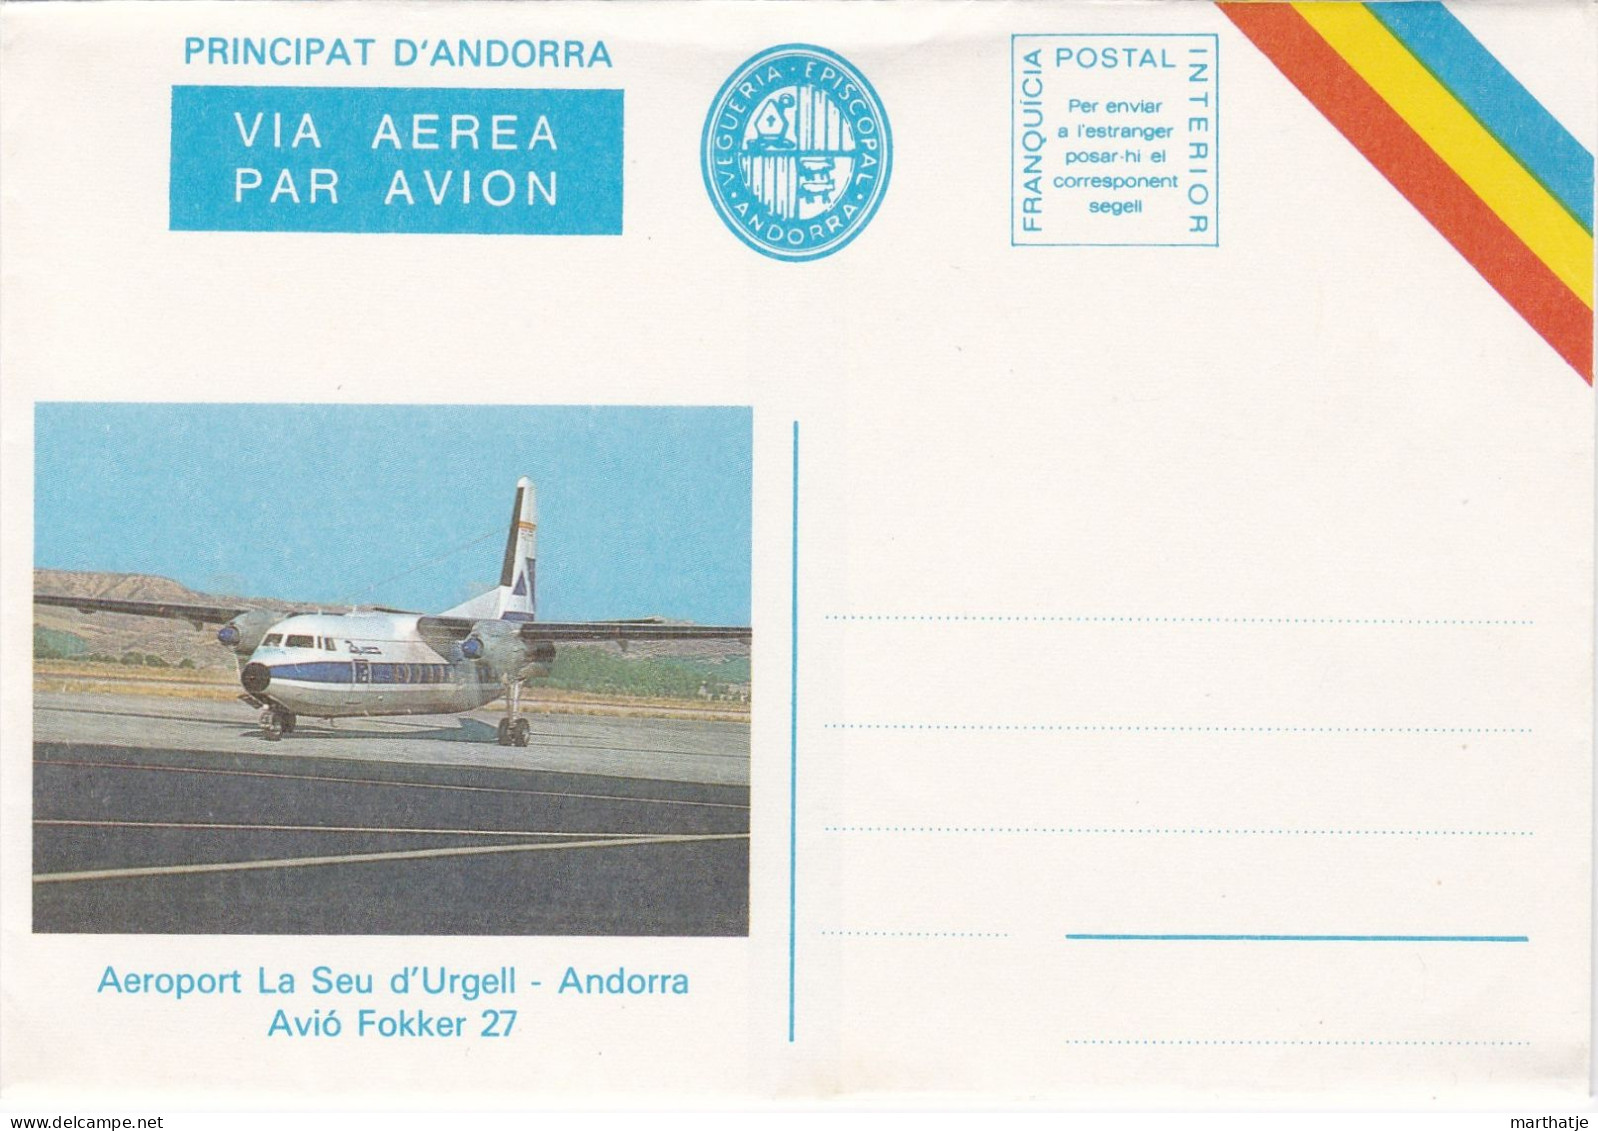 Principat D'Andorra -  Via Aerea Par Avion - Vegueria Episcopal - Aeroport La Seu D'Urgell - Avio Fokker 27 - Andorra - Vicariato Episcopale